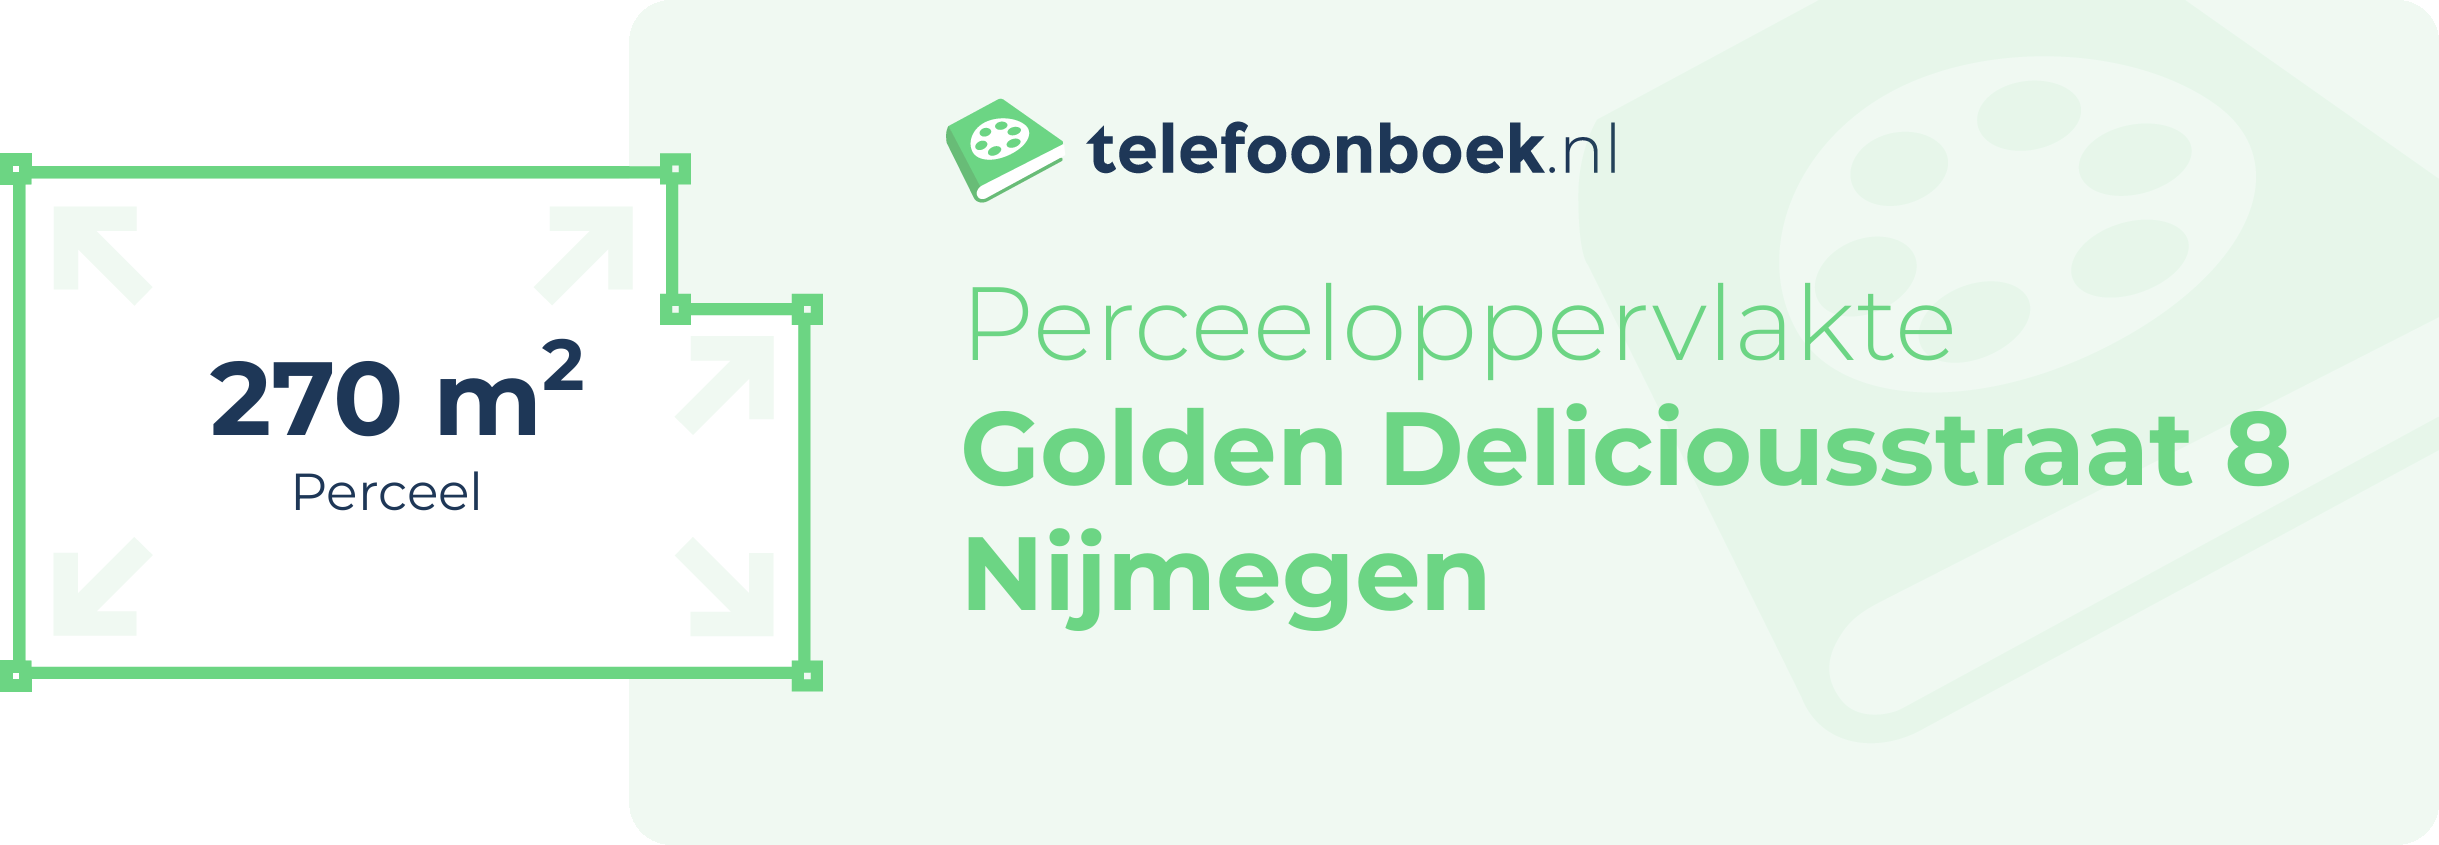 Perceeloppervlakte Golden Deliciousstraat 8 Nijmegen